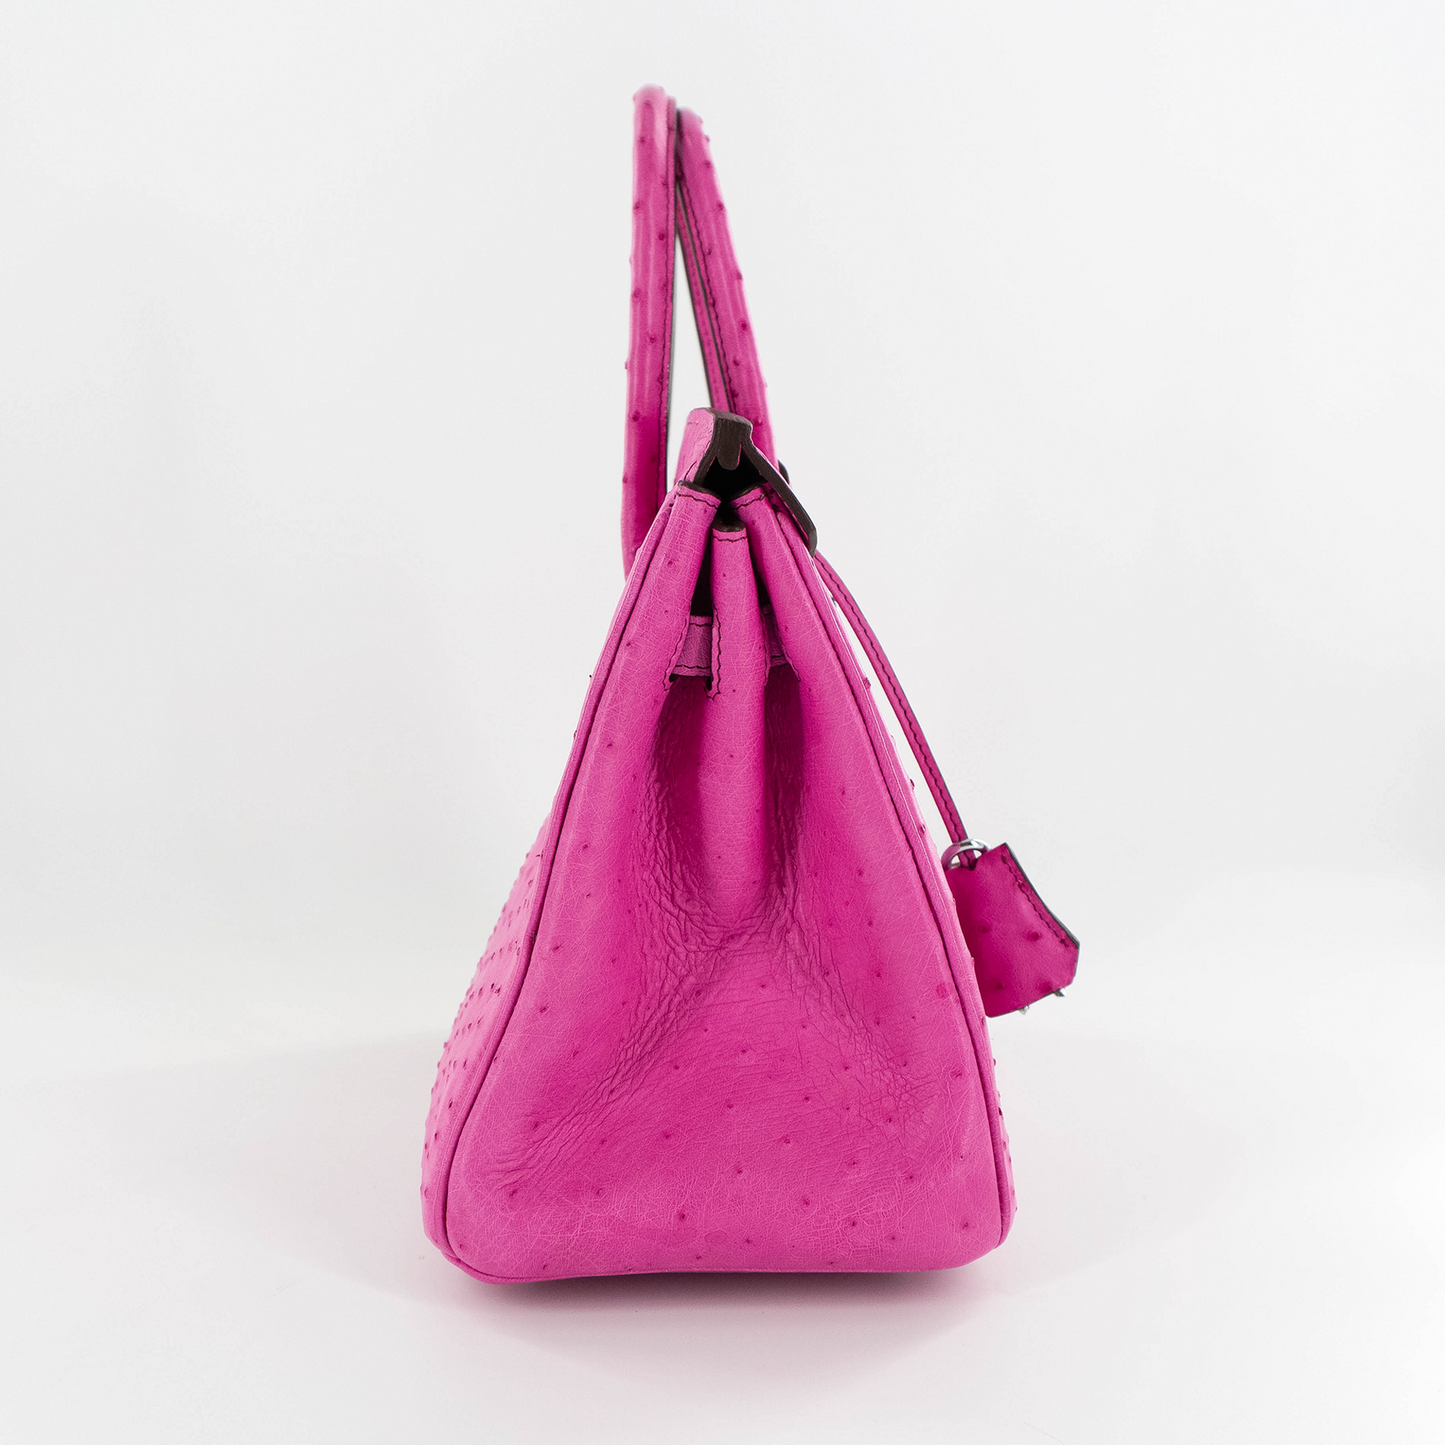 Duchess Handbag in Pink Ostrich Skin